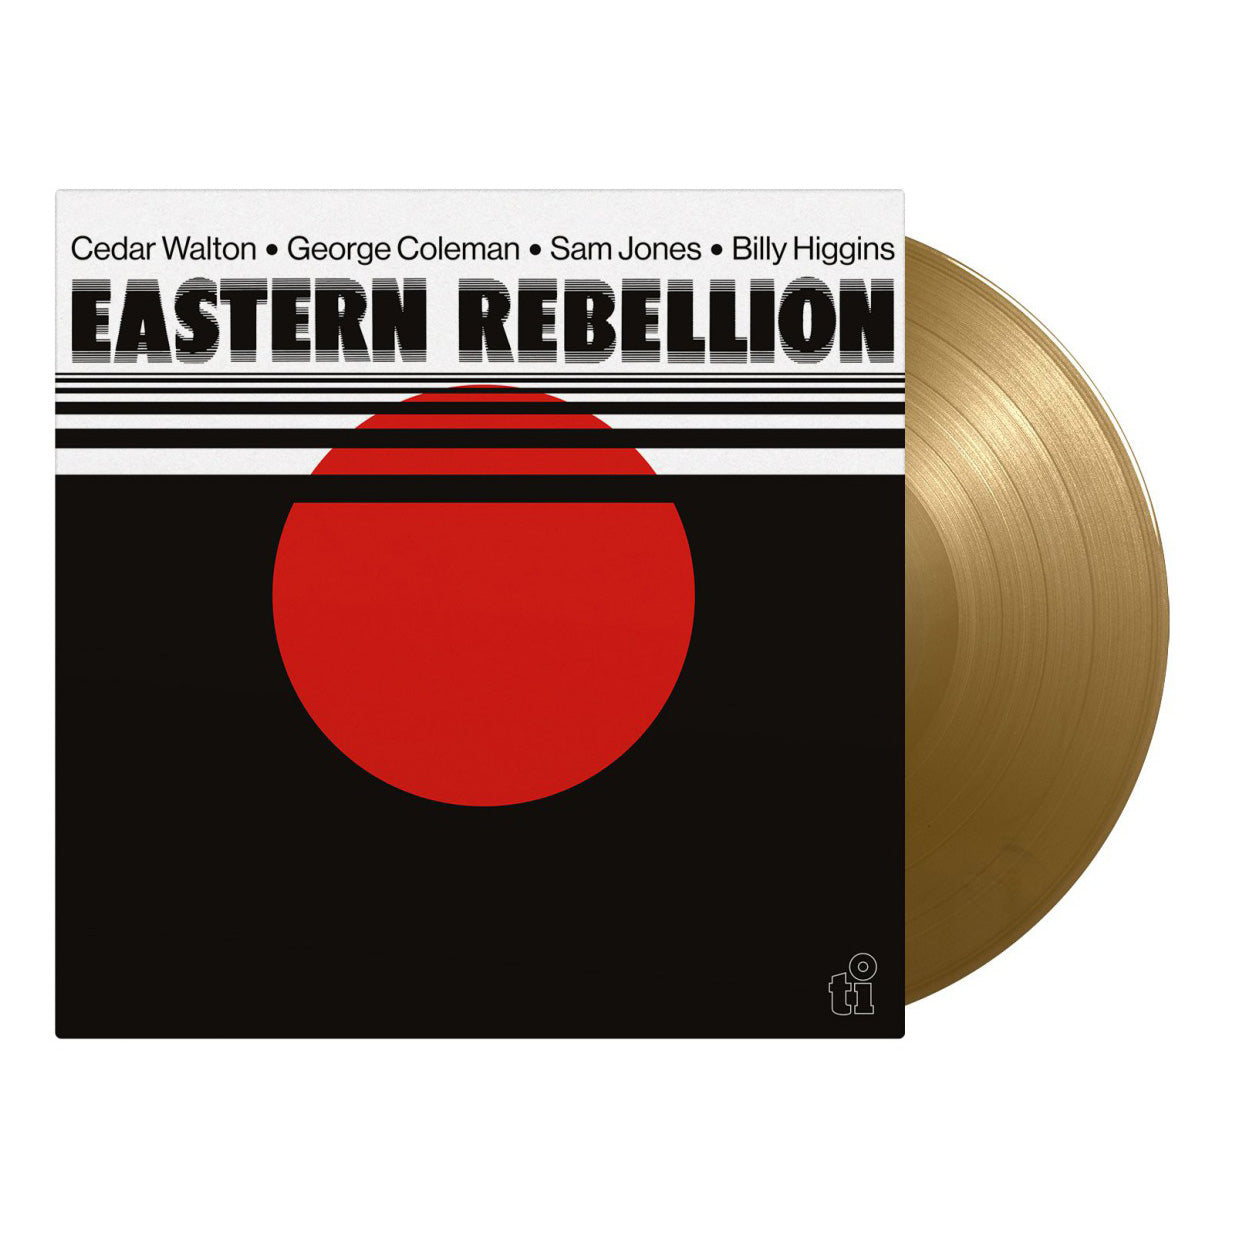 Eastern Rebellion - Eastern Rebellion: Limited Gold Vinyl LP